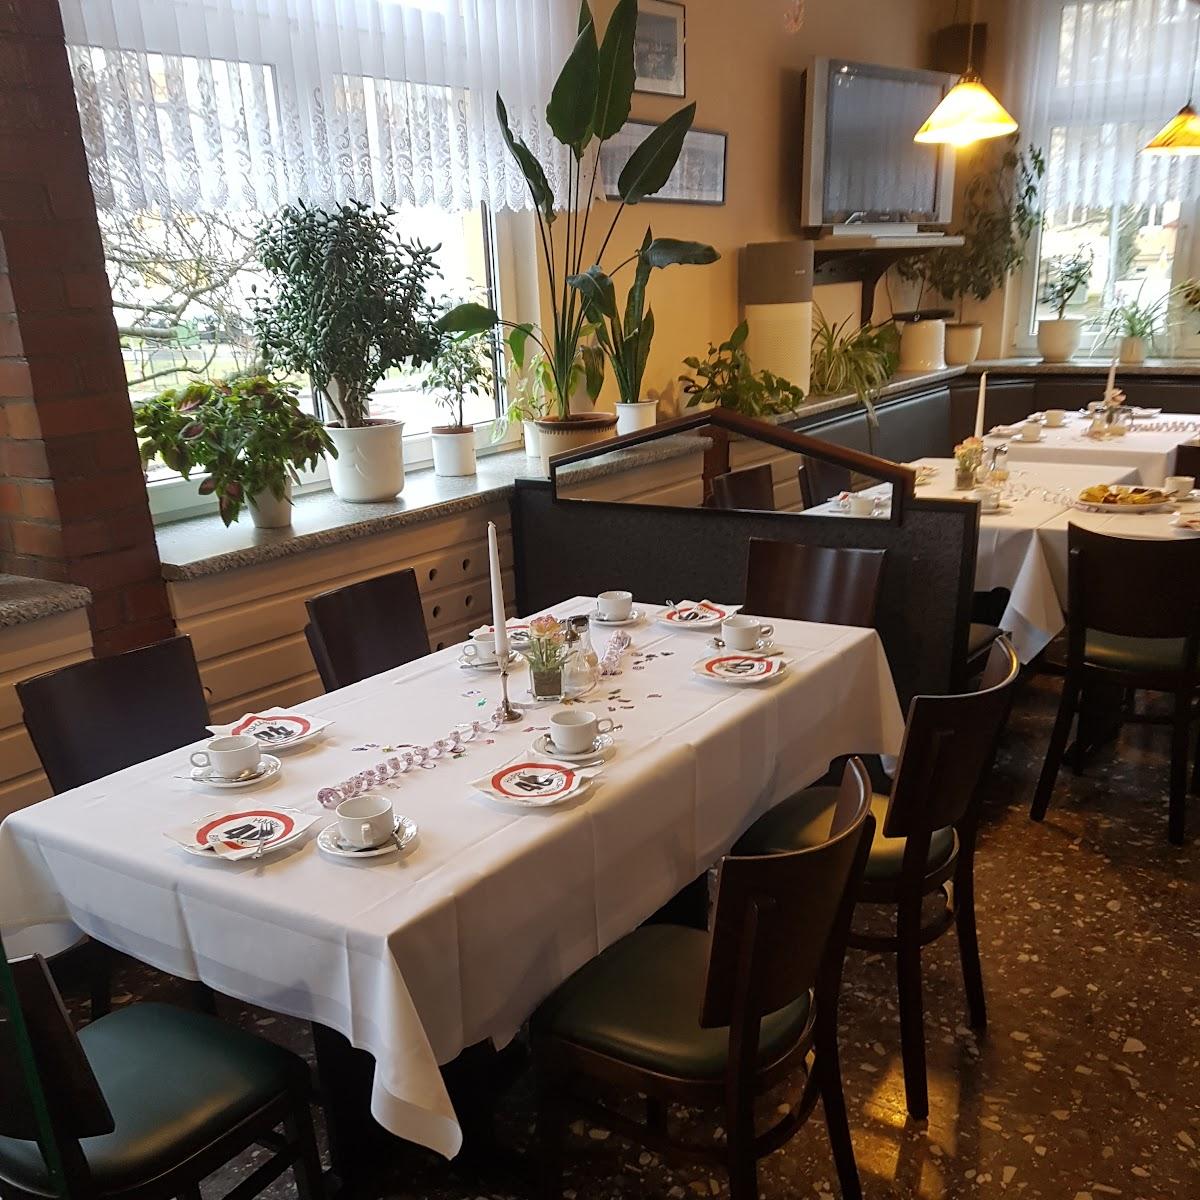 Restaurant "Gasthaus Zur Sommerleithe" in Gera